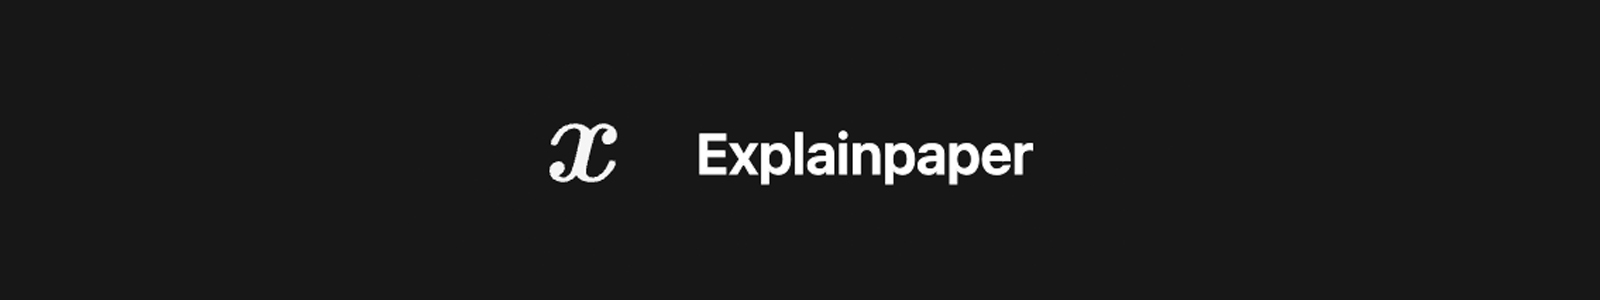 Explainpaper